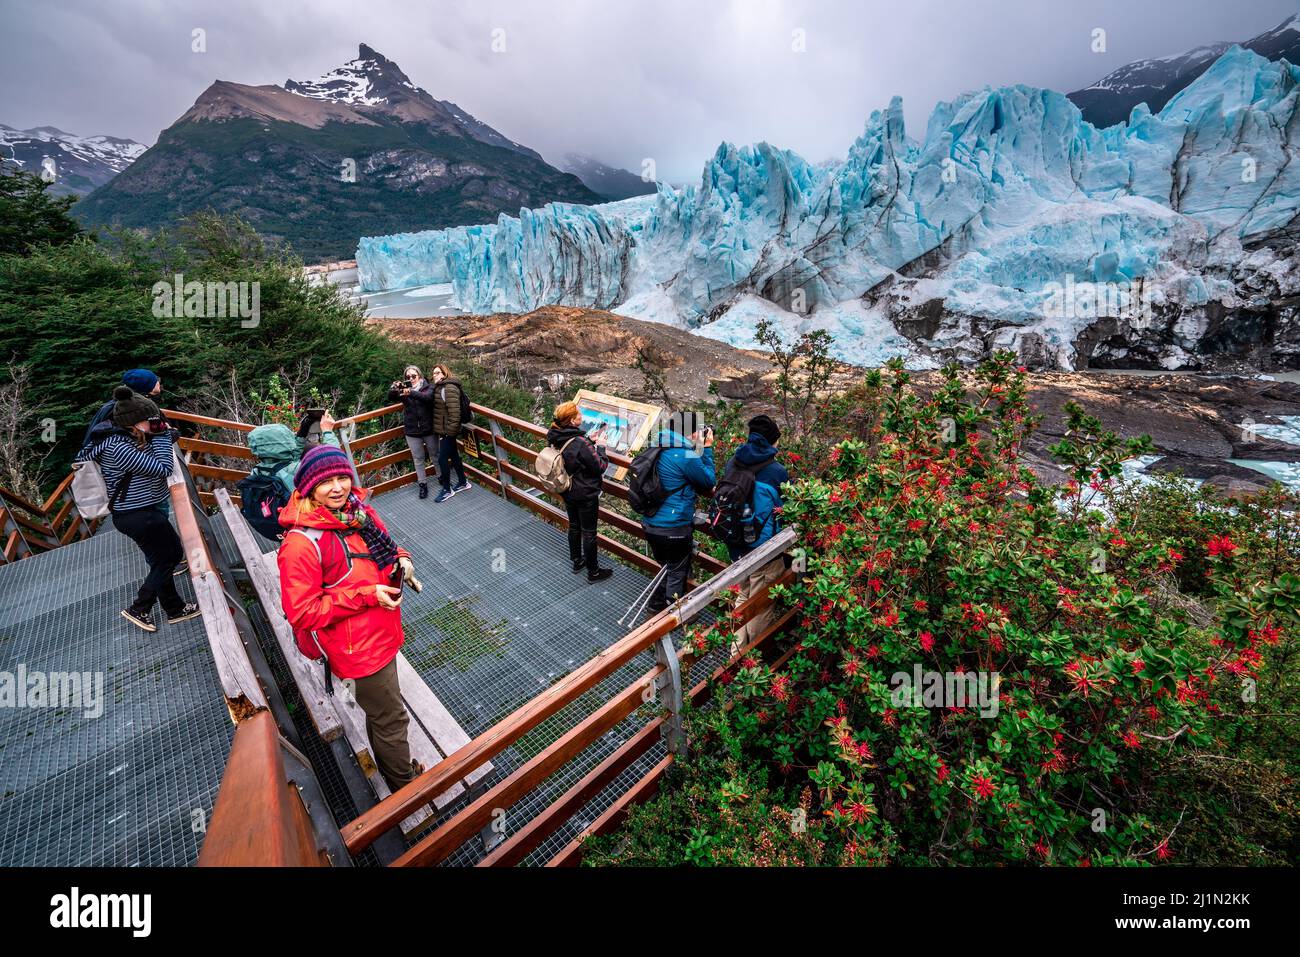 El Calafate, Argentina - 11.29.2021: Turisti che fotografano il famoso ghiacciaio perito Moreno in Patagonia argentina Foto Stock